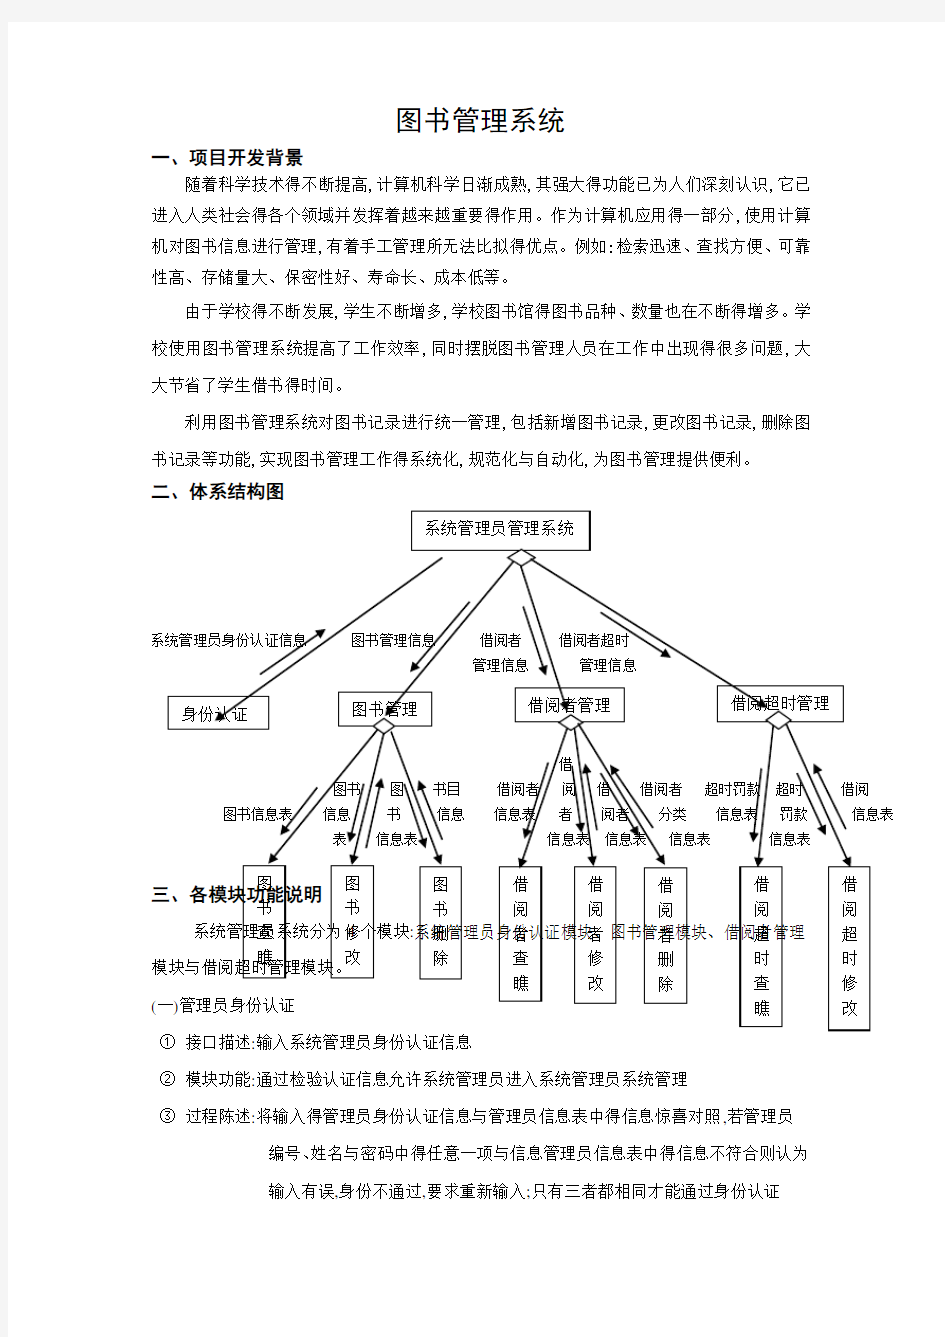 图书管理系统体系结构图和数据流程图